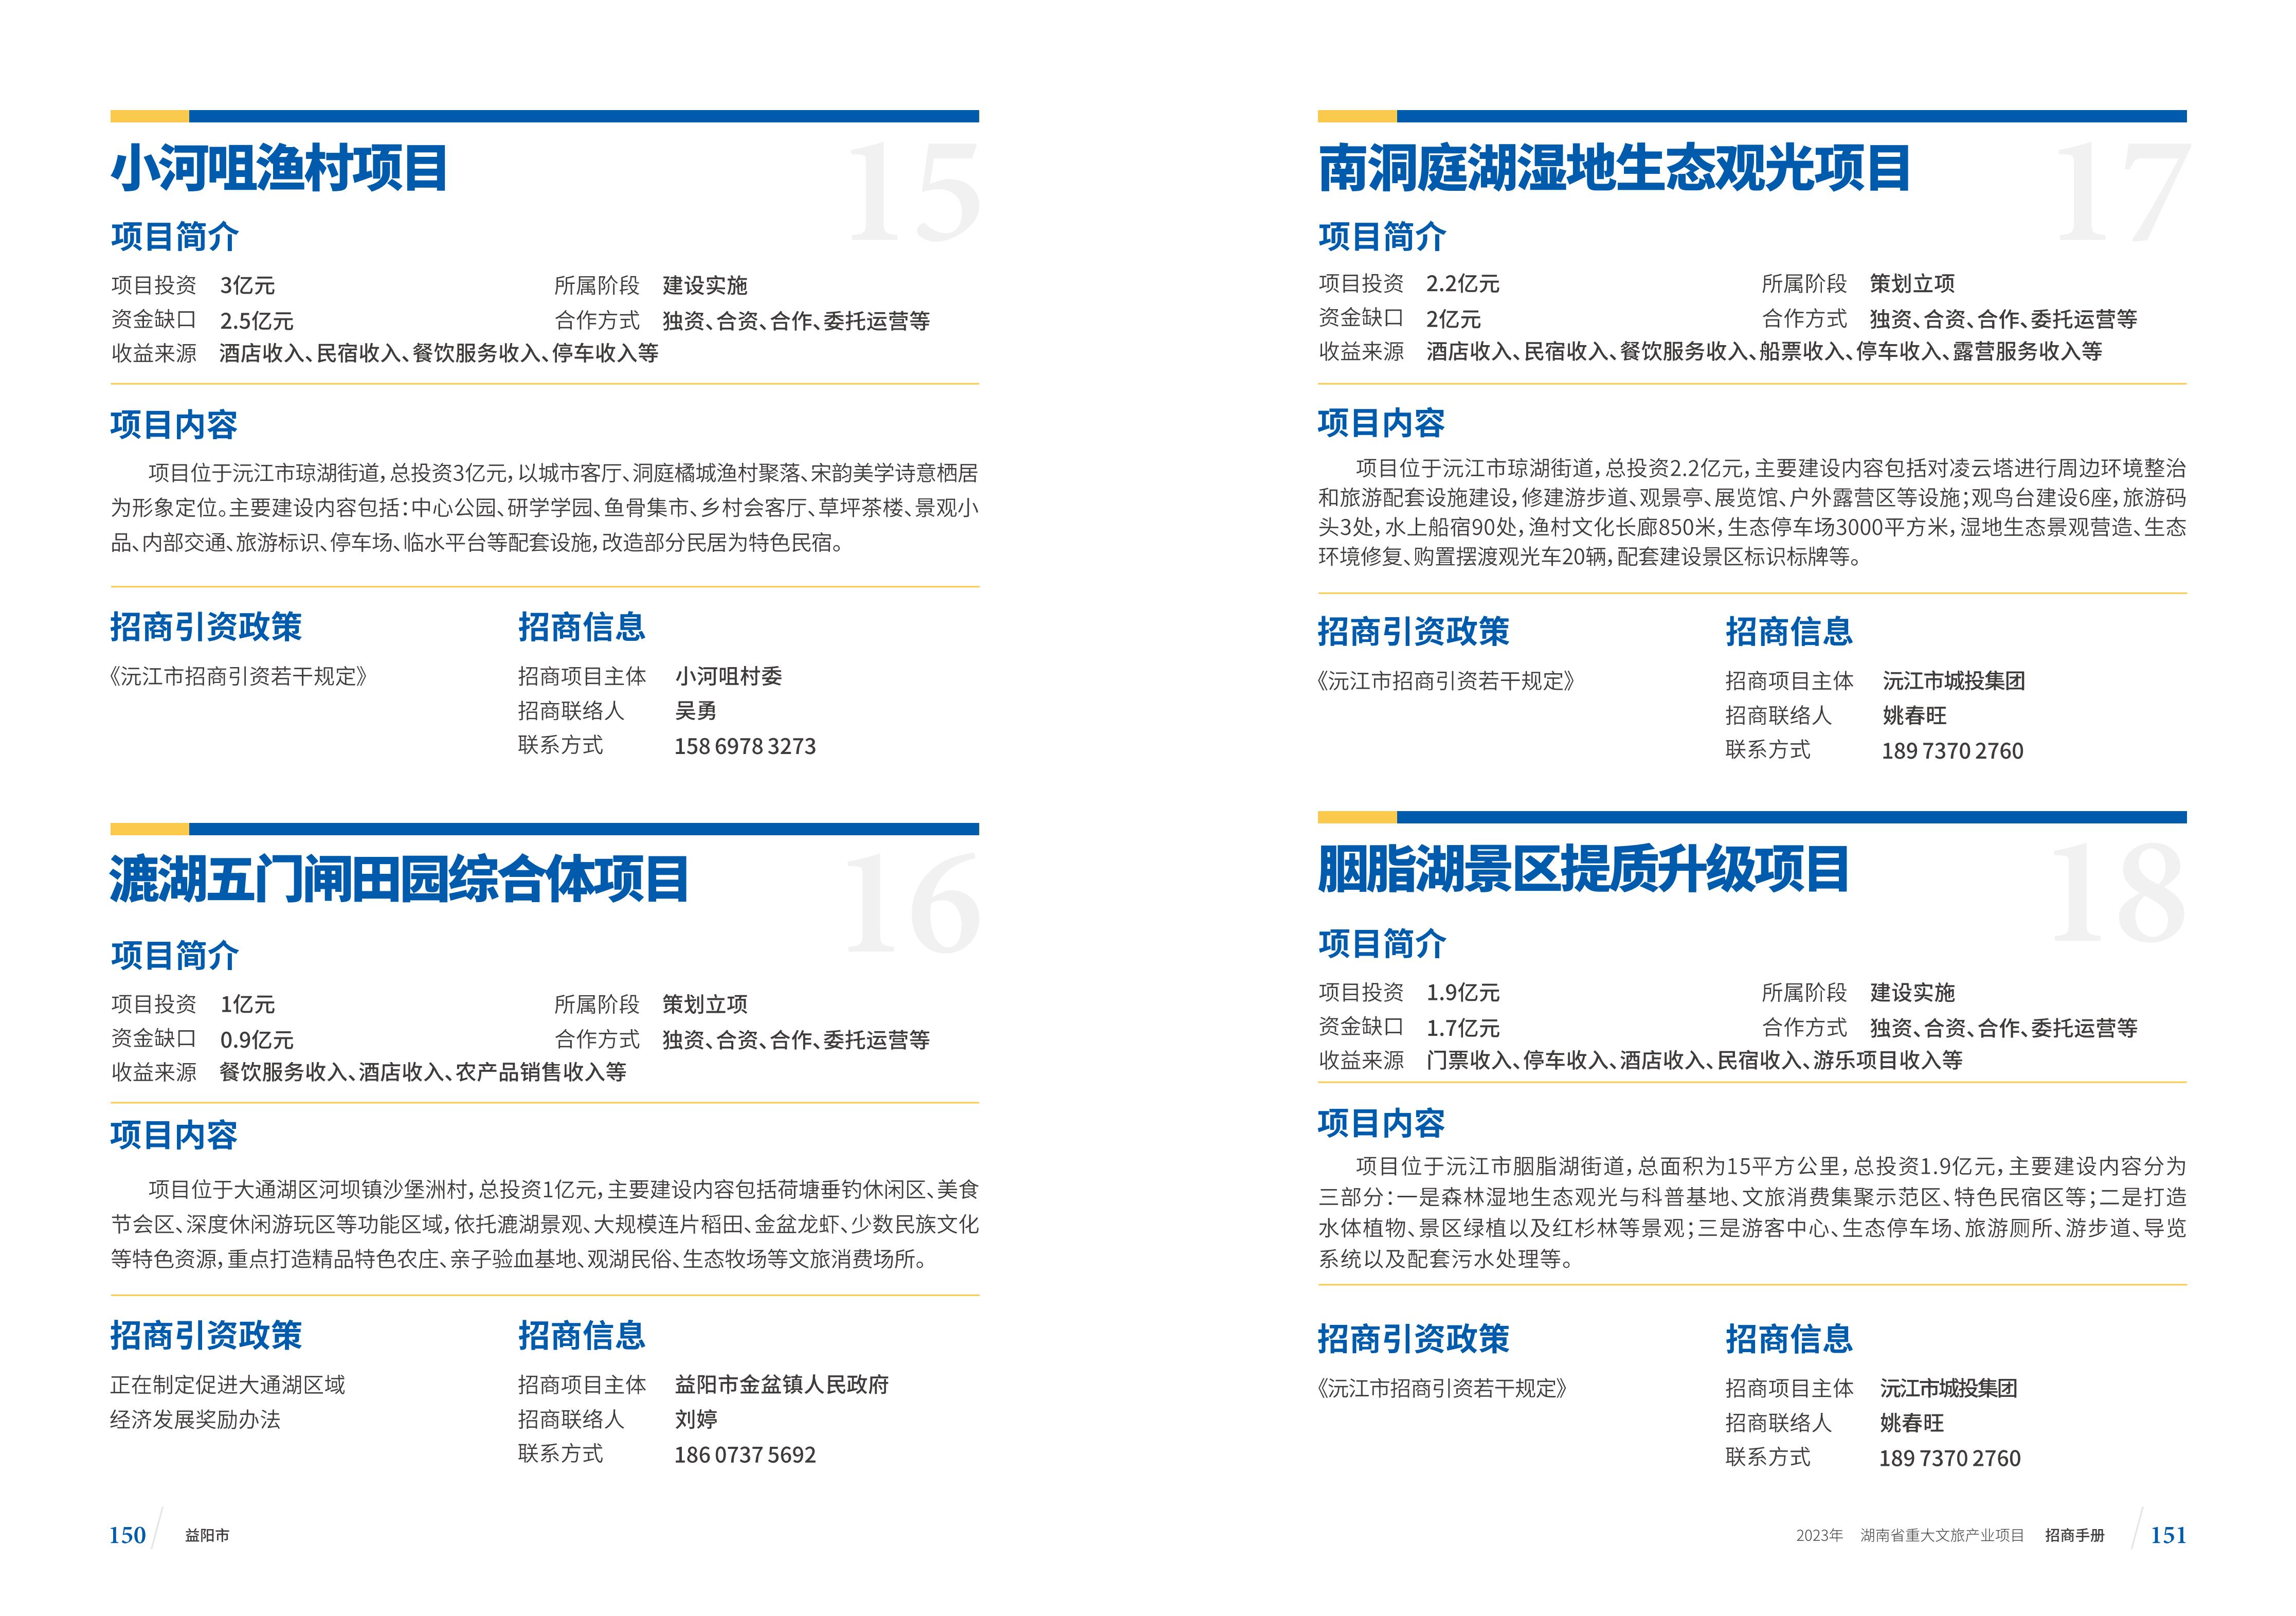 湖南省重大文旅产业项目招手册线上链接版_83.jpg